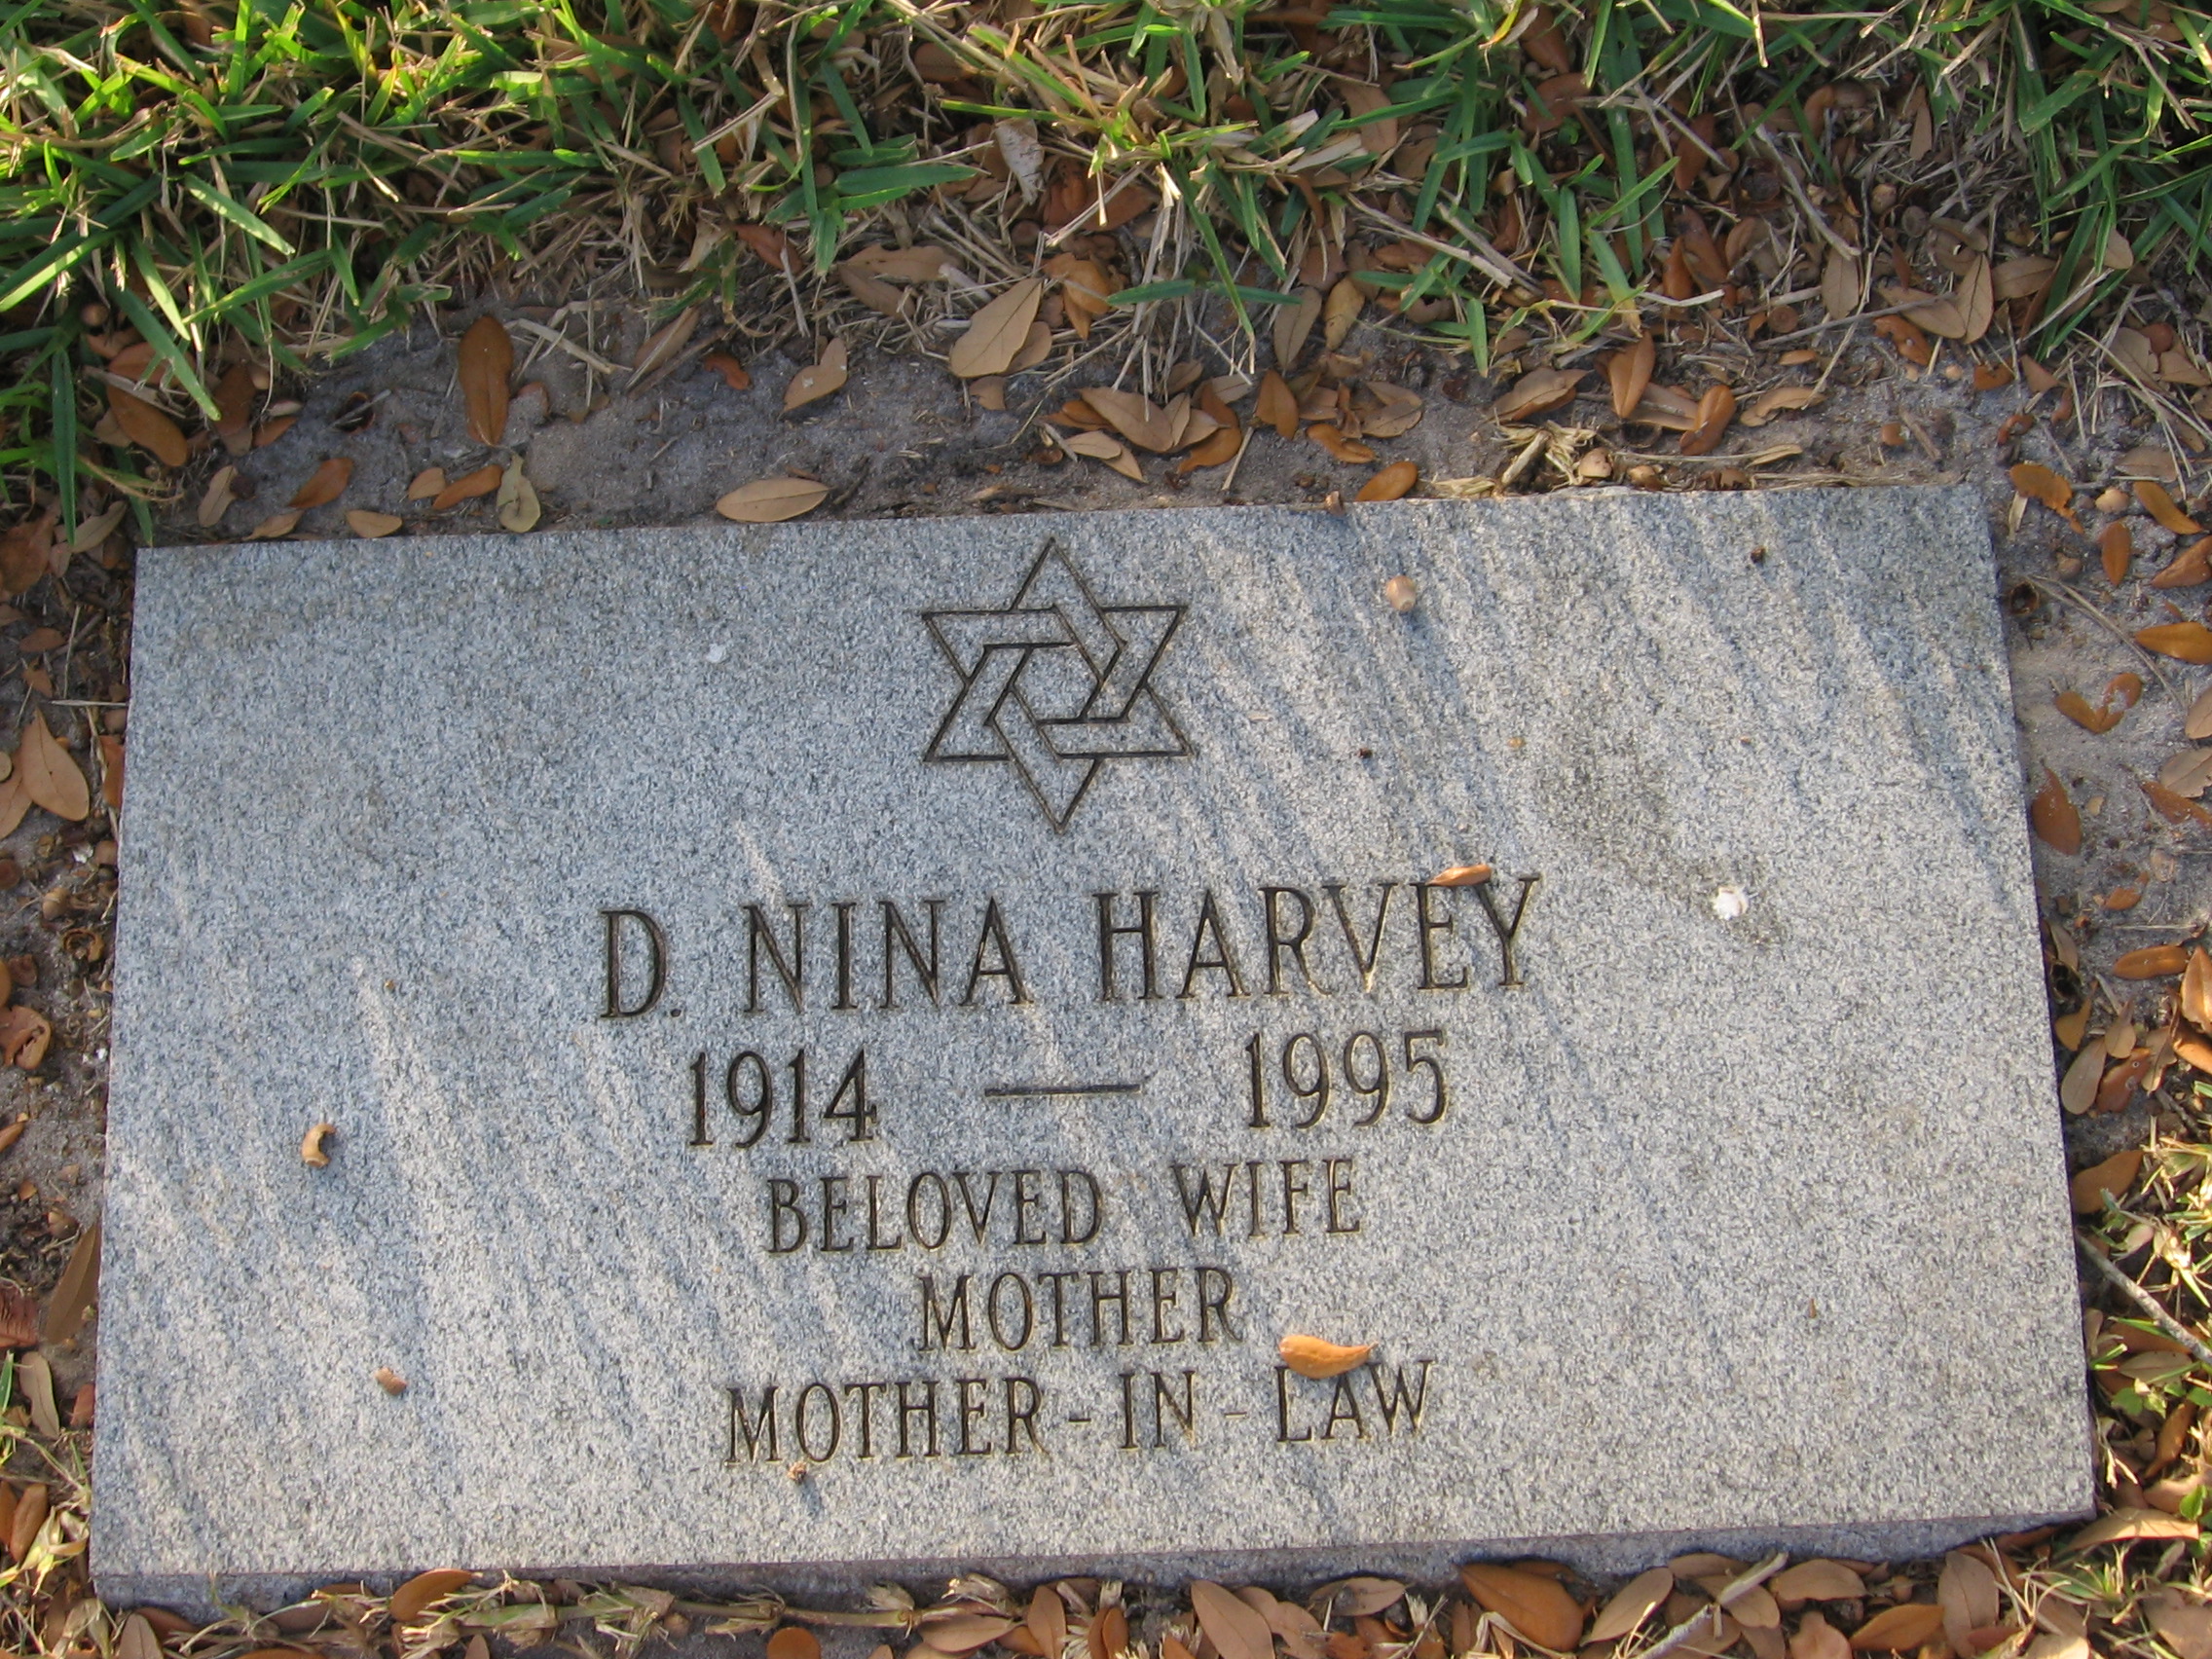 D Nina Harvey